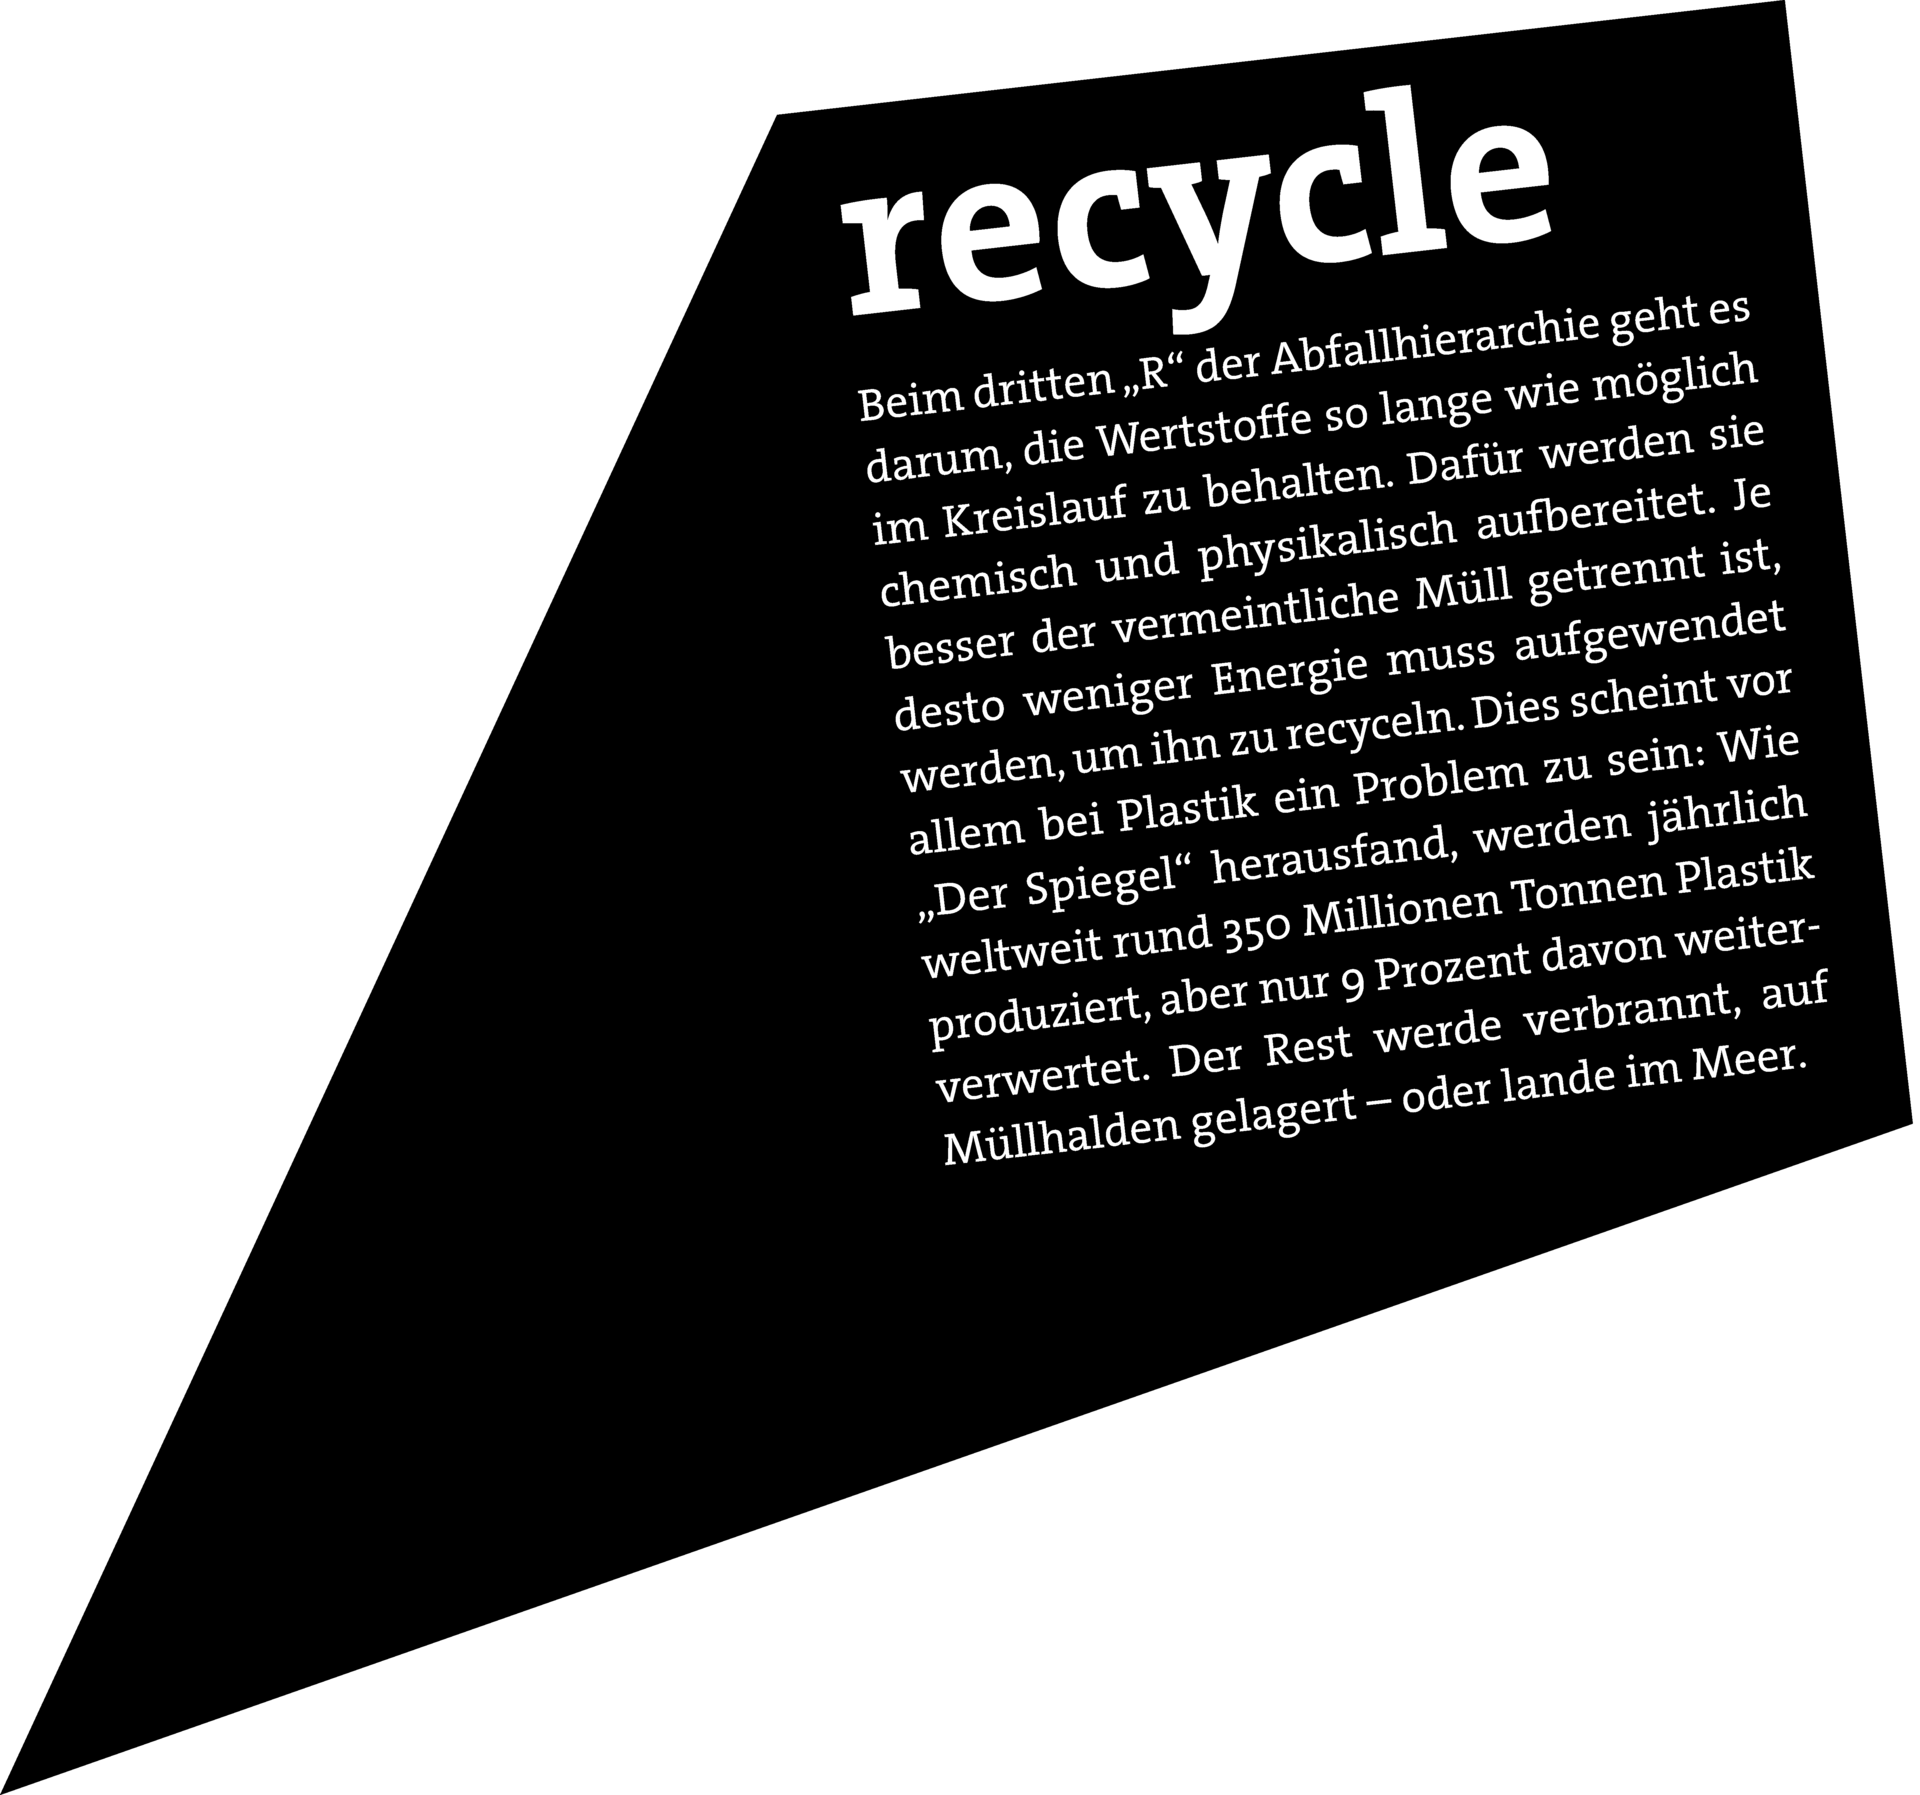 RECYCLE: Beim dritten „R“ der Abfallhierarchie geht es darum, die Wertstoffe so lange wie möglich im Kreislauf zu behalten. Dafür werden sie chemisch und physikalisch aufbereitet. Je besser der vermeintliche Müll getrennt ist, desto weniger Energie muss aufgewendet werden, um ihn zu recyceln. Dies scheint vor allem bei Plastik ein Problem zu sein: Wie „Der Spiegel“ herausfand, werden jährlich weltweit rund 350 Millionen Tonnen Plastik produziert, aber nur 9 Prozent davon weiterverwertet. Der Rest werde verbrannt, auf Mülhalden gelagert – oder lange im Meer.